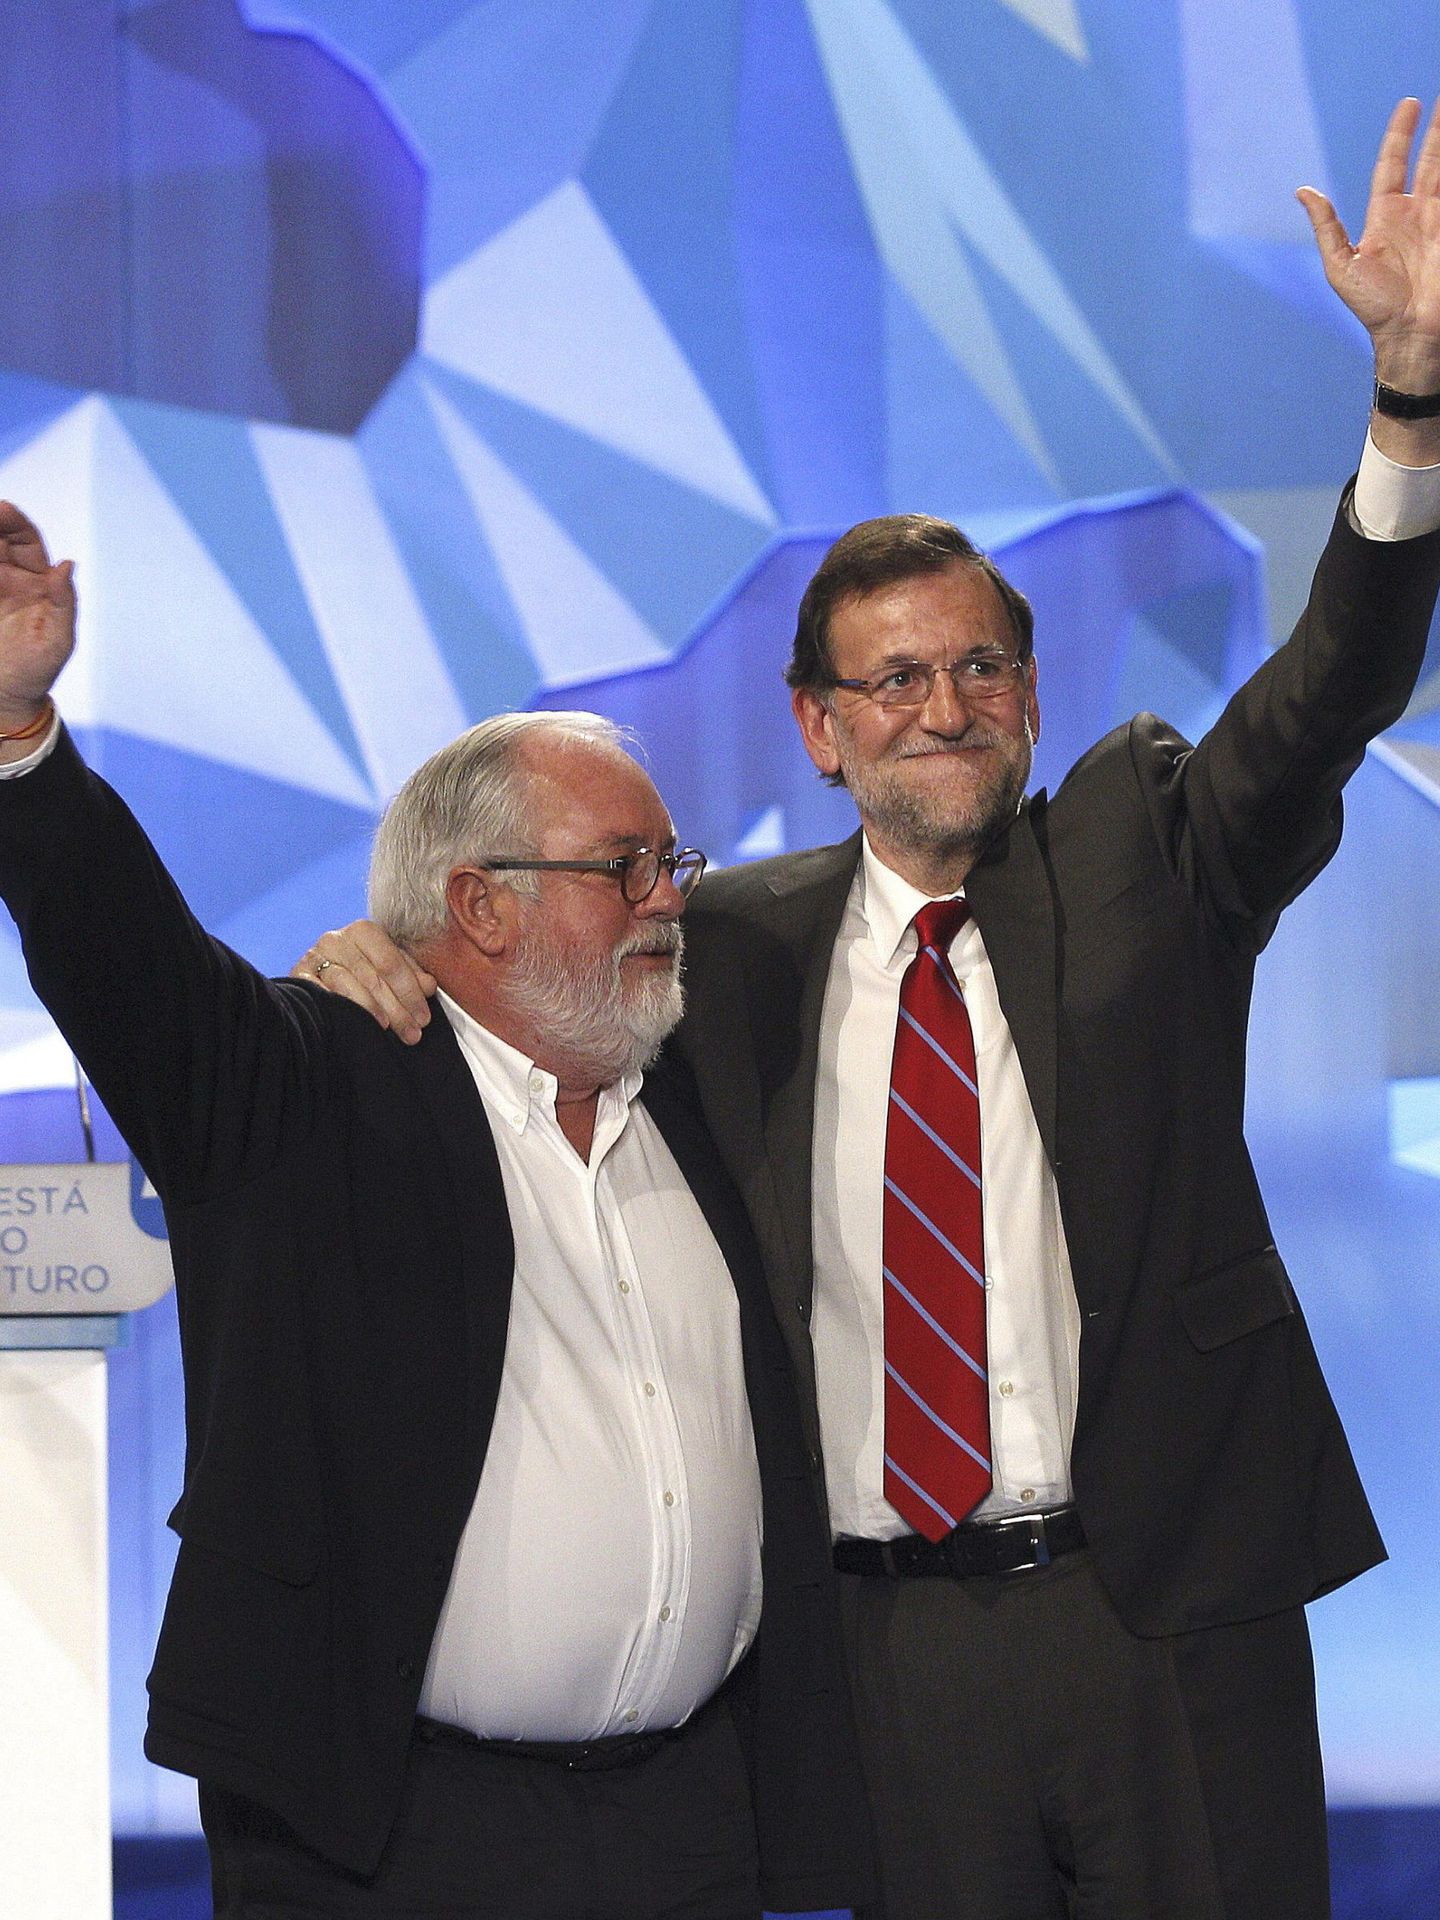 El presidente del Gobierno, Mariano Rajoy, y Arias Cañete en la campaña a Europa en 2014. (EFE)